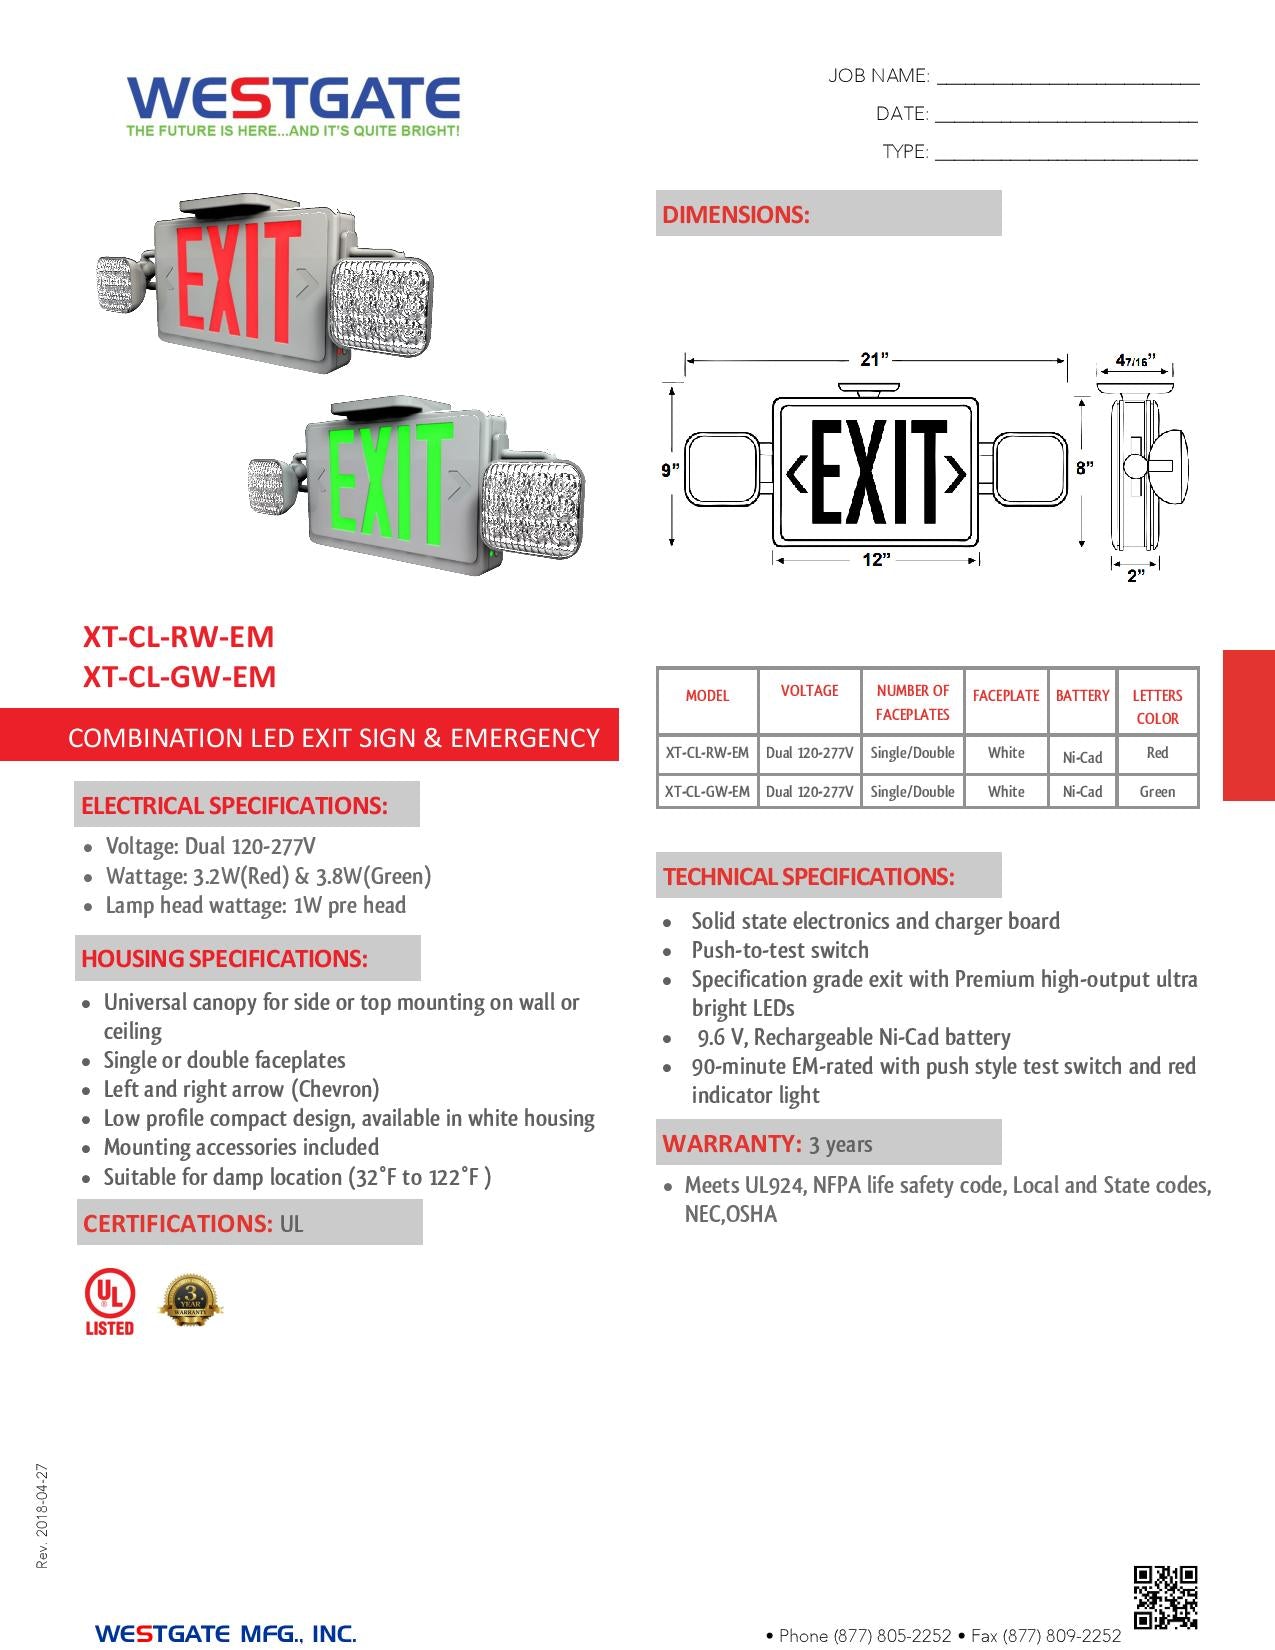 WESTGATE Combination LED Exit & LED Emergency